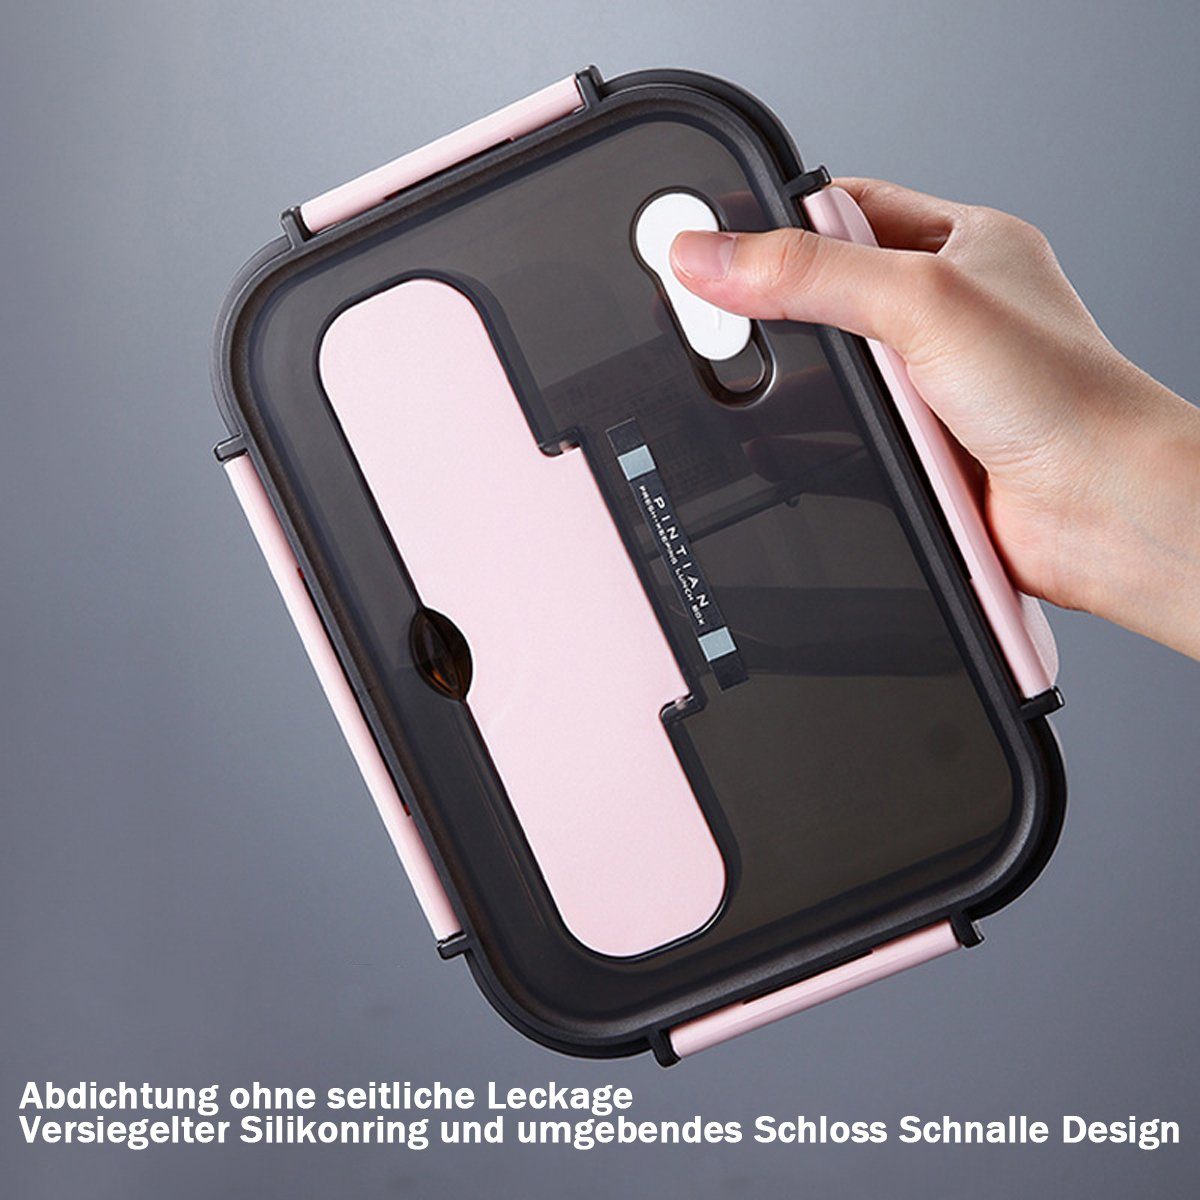 Rosa mit Lunchbox Jormftte Bento Lunchbox Box,für Lagerung Arbeit,Reisen Löffel,Lebensmittel